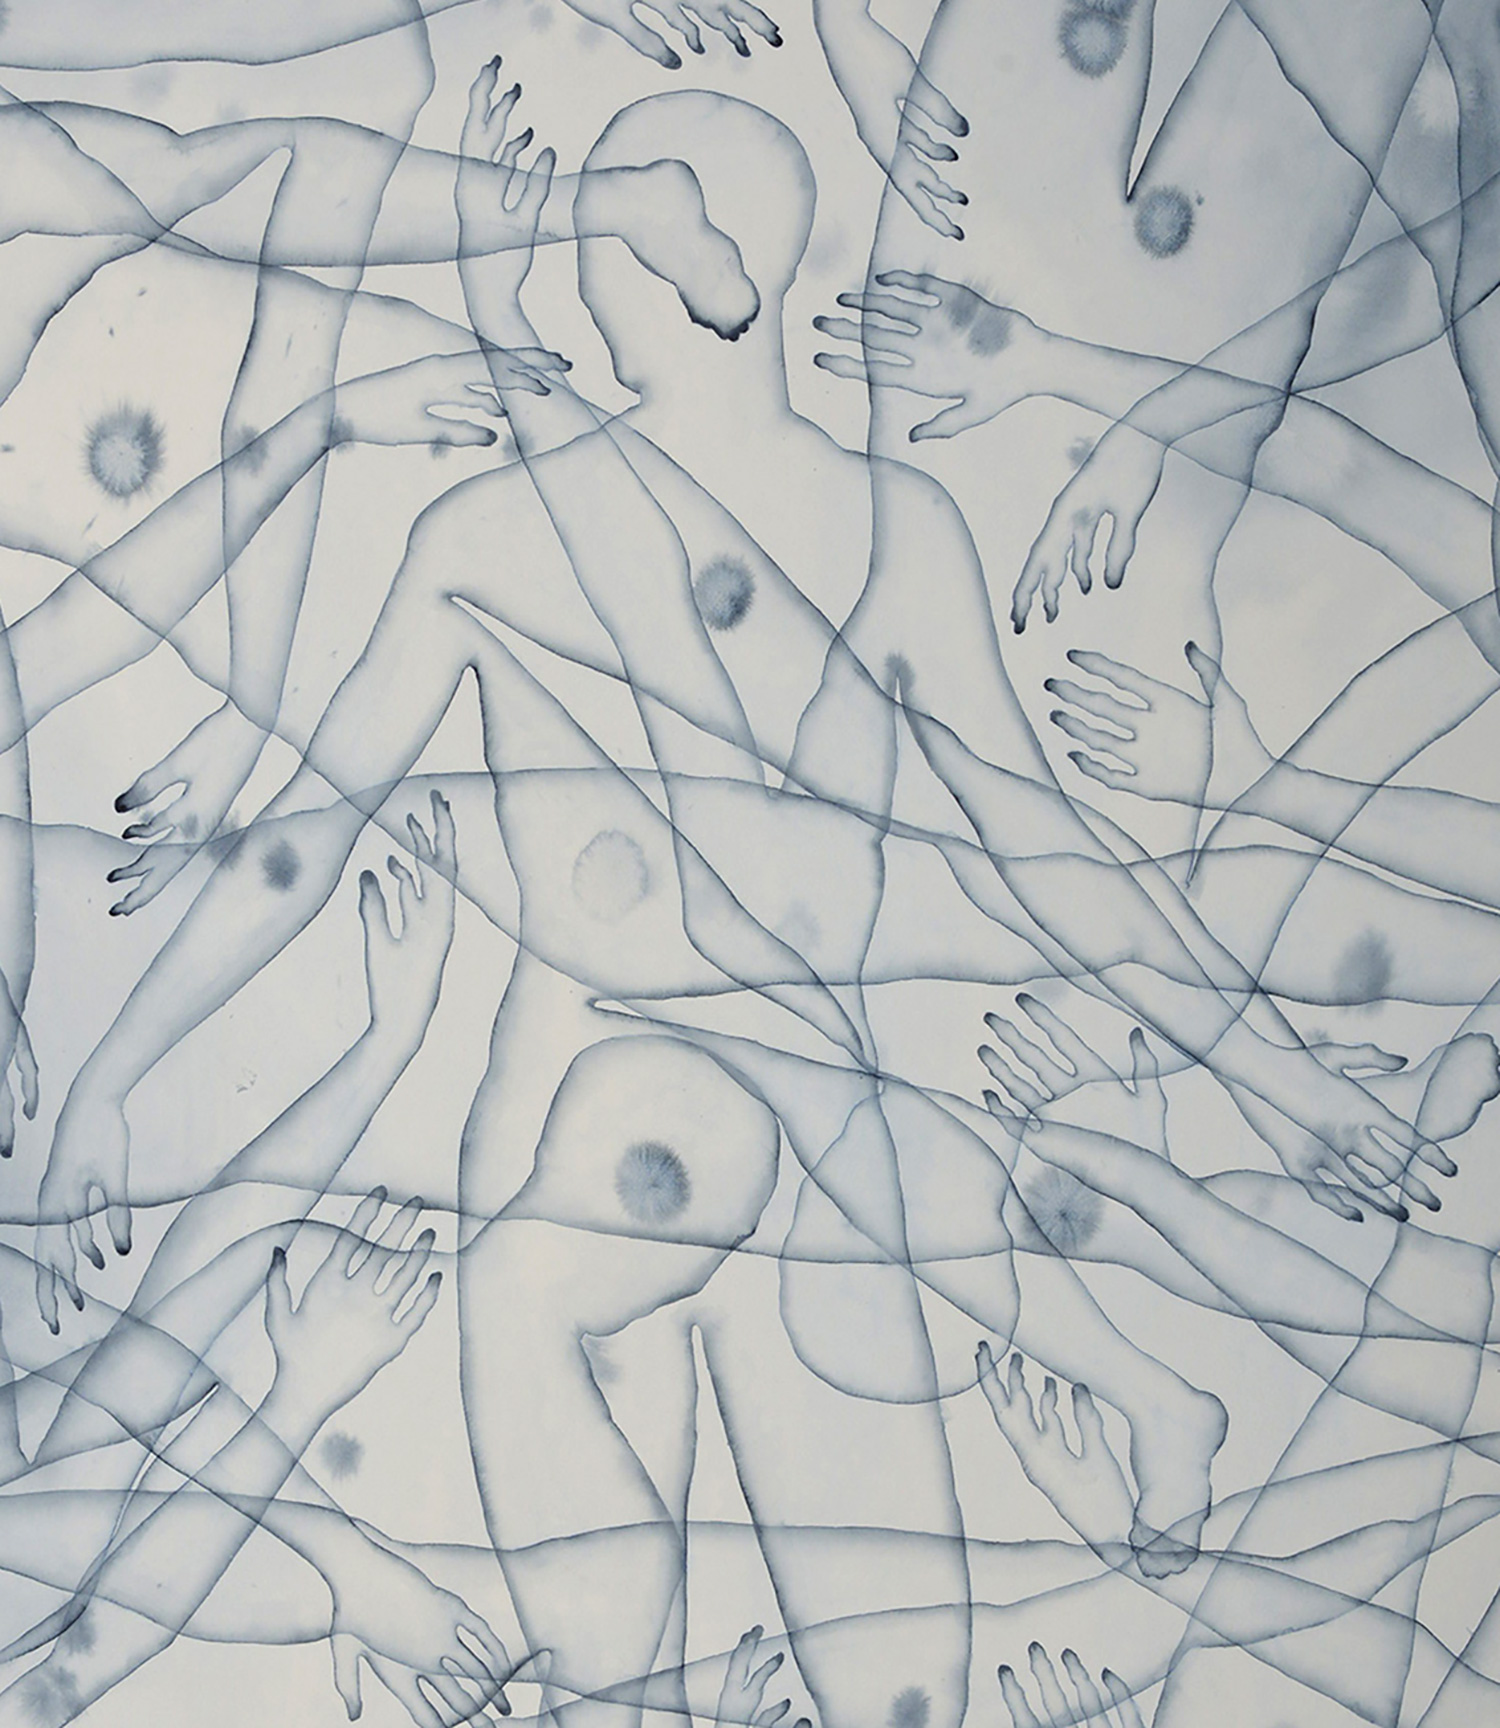 Stefano Bolzano, Co-esistenza emotiva, acquerello su carta, 86x135 cm, 2020 (dettqaglio).